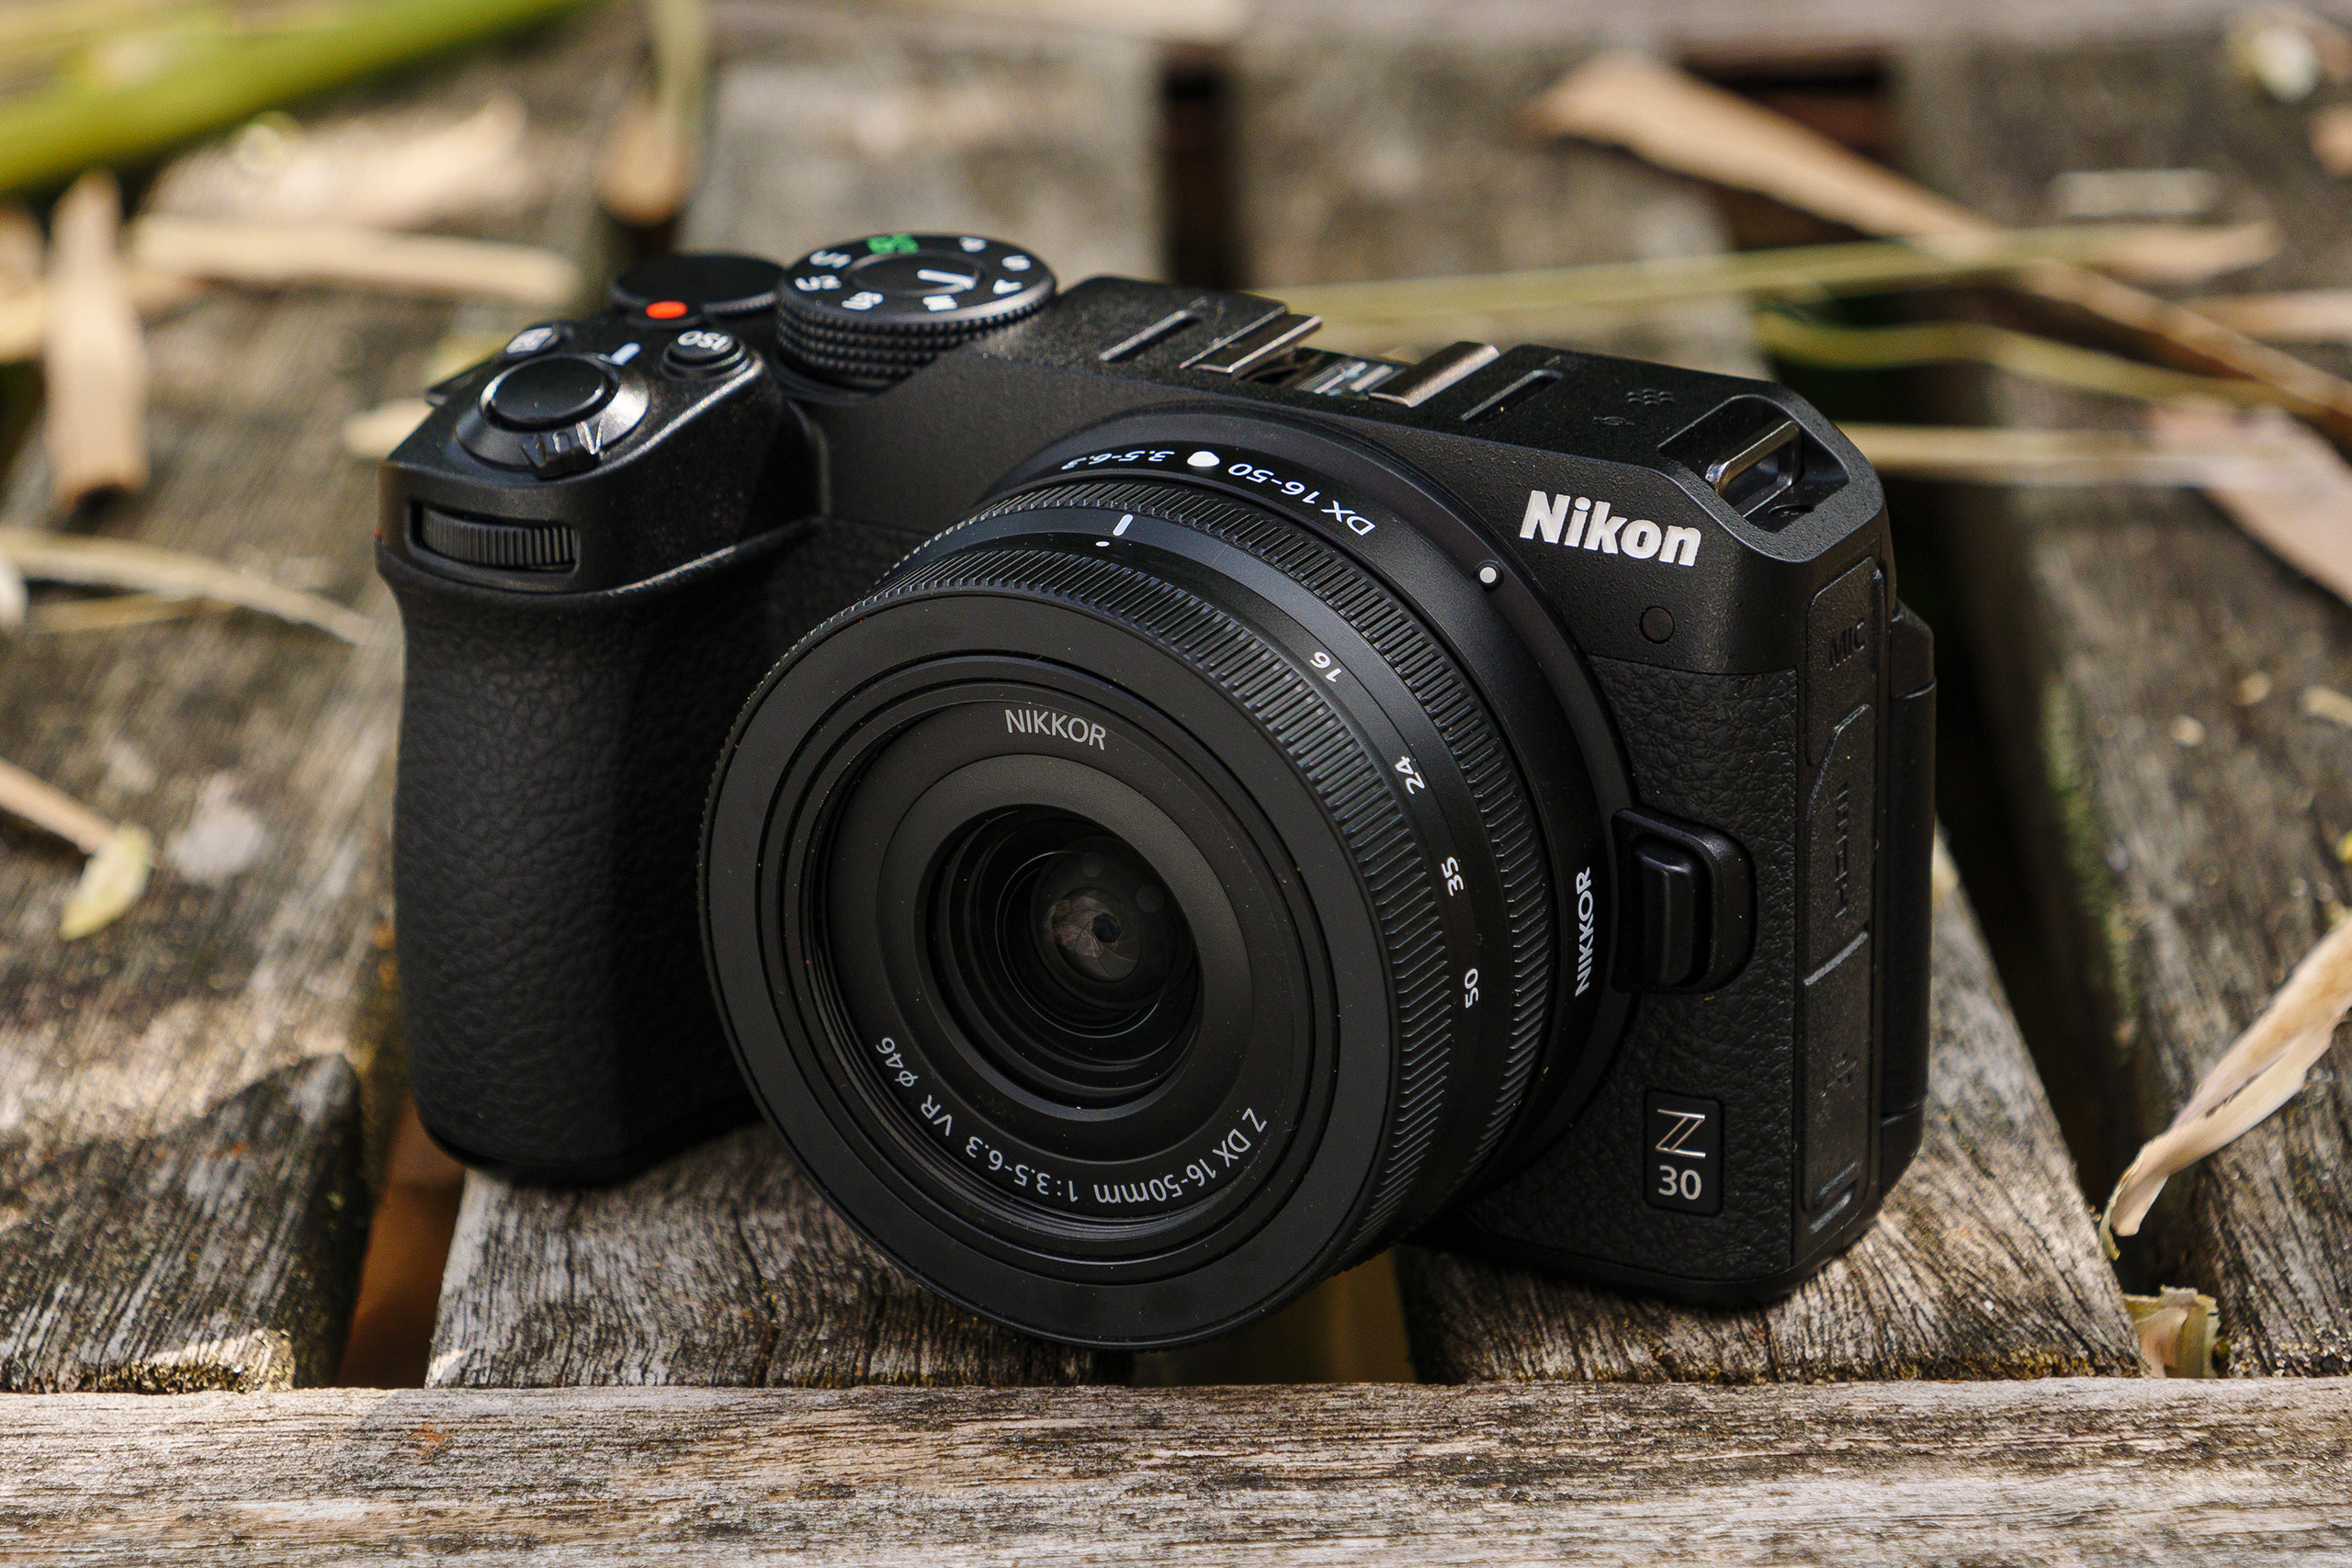 Nikon Z30 with 16-50mm kit lens